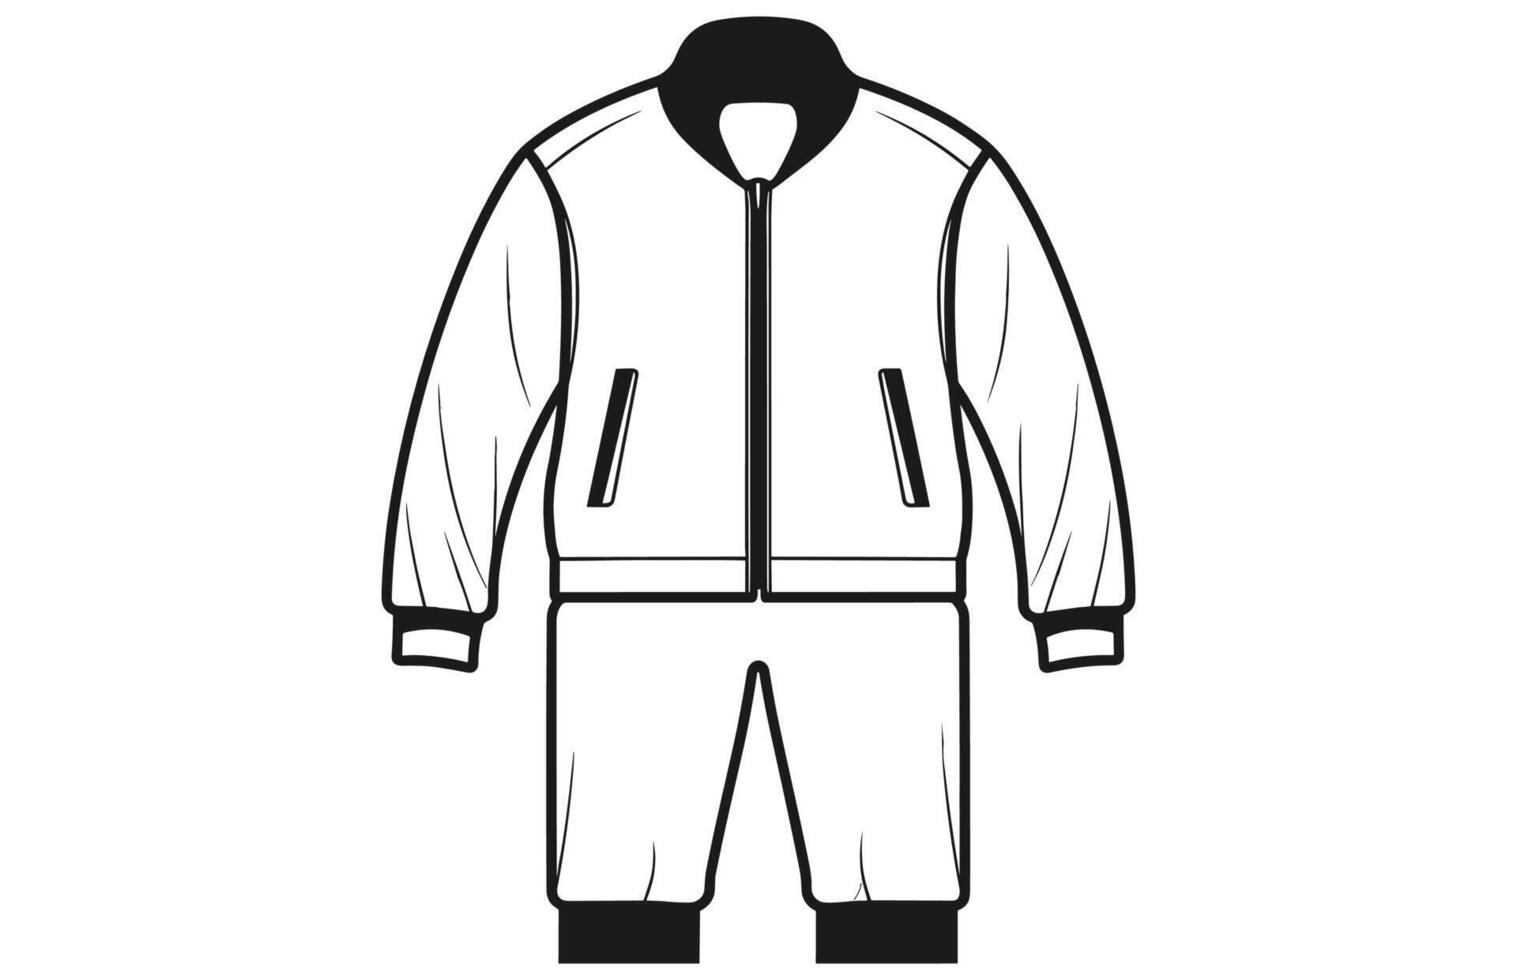 Pour des hommes Zip *: français en haut Piste veste contour illustration, longue manche polo collier Piste costume veste. vecteur